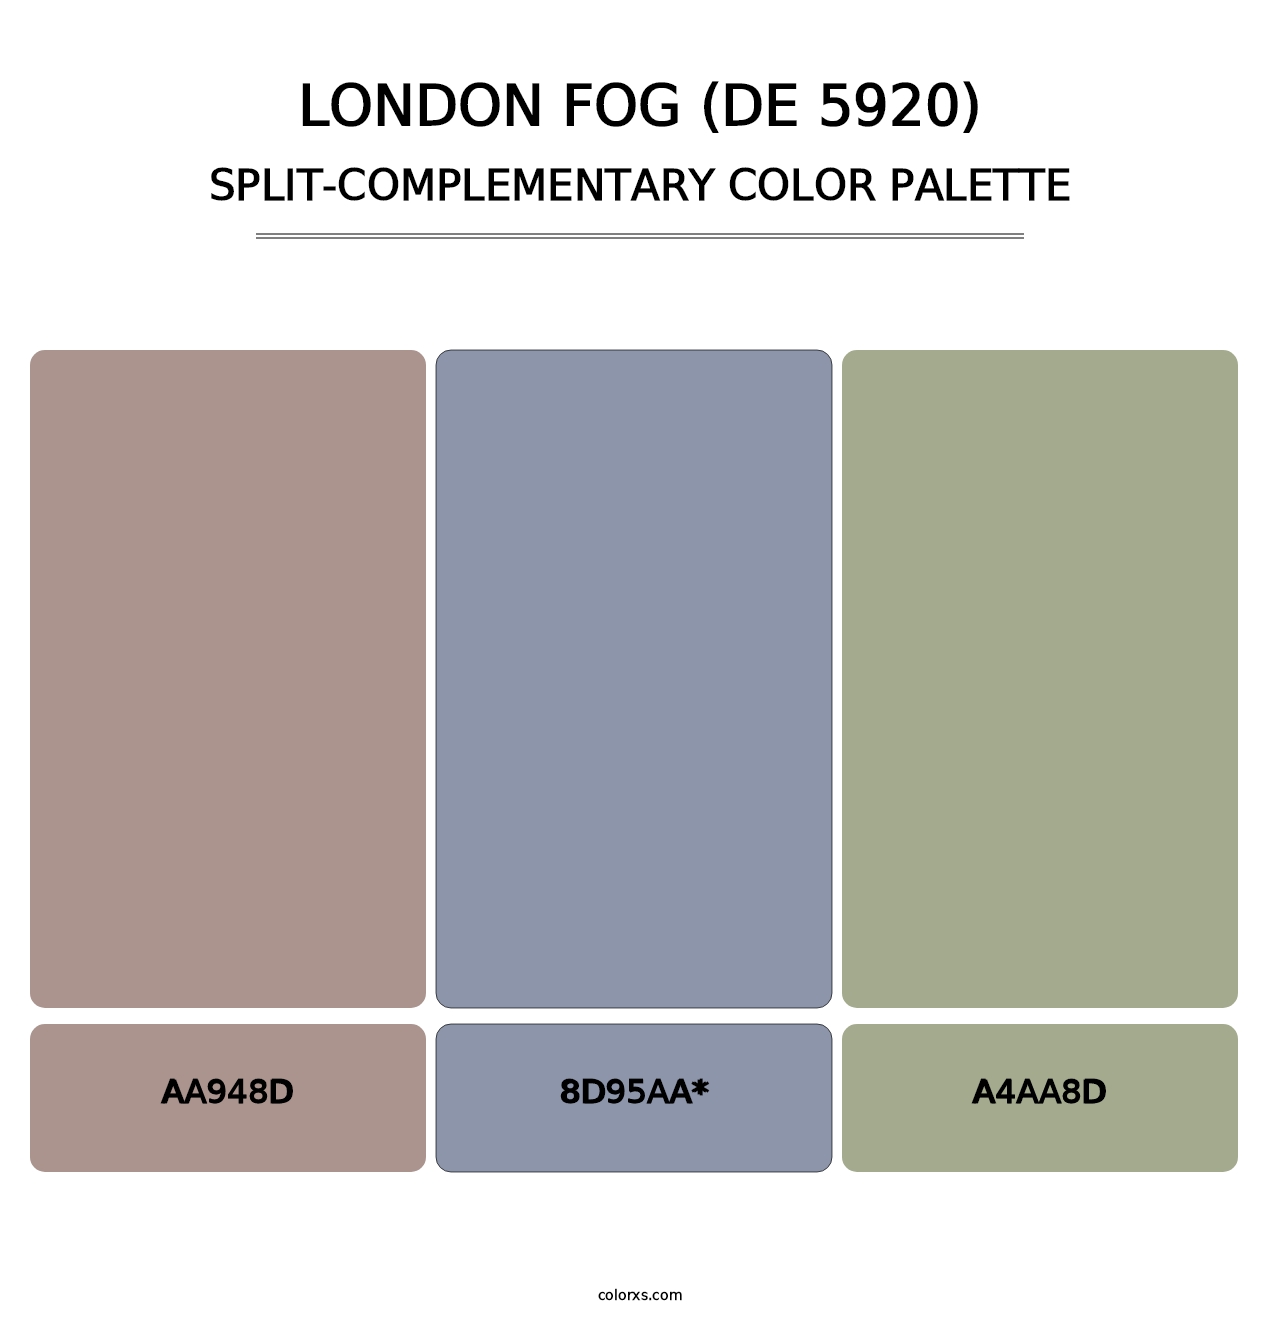 London Fog (DE 5920) - Split-Complementary Color Palette